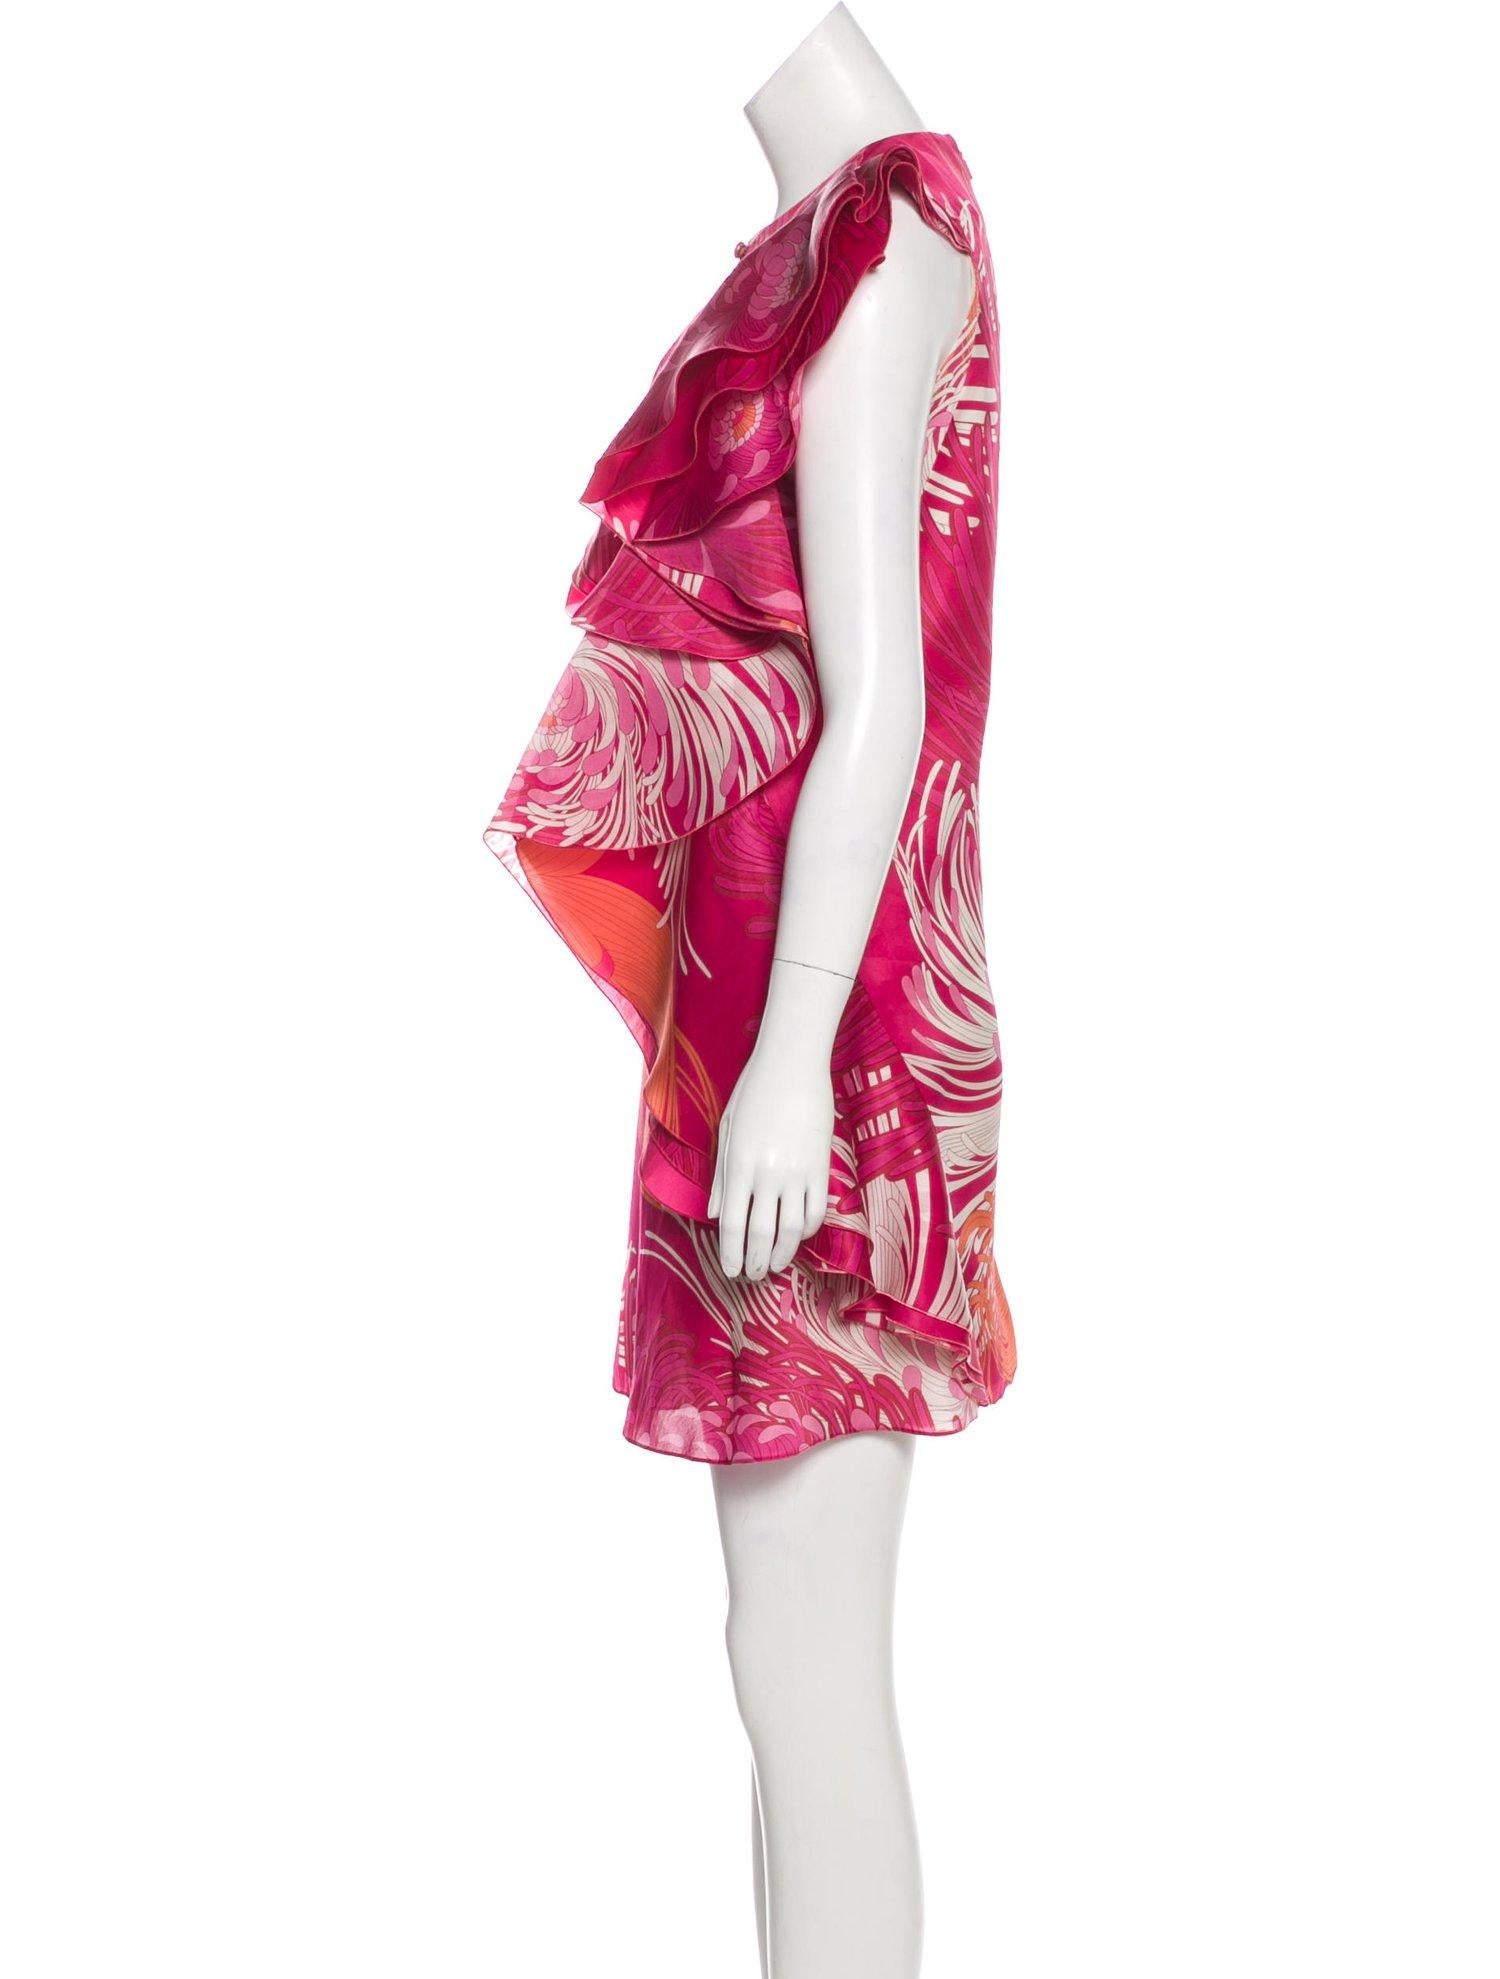 New Rare Gucci Runway Ad Silk Dress S/S 2013 Sz 40 $3499 1